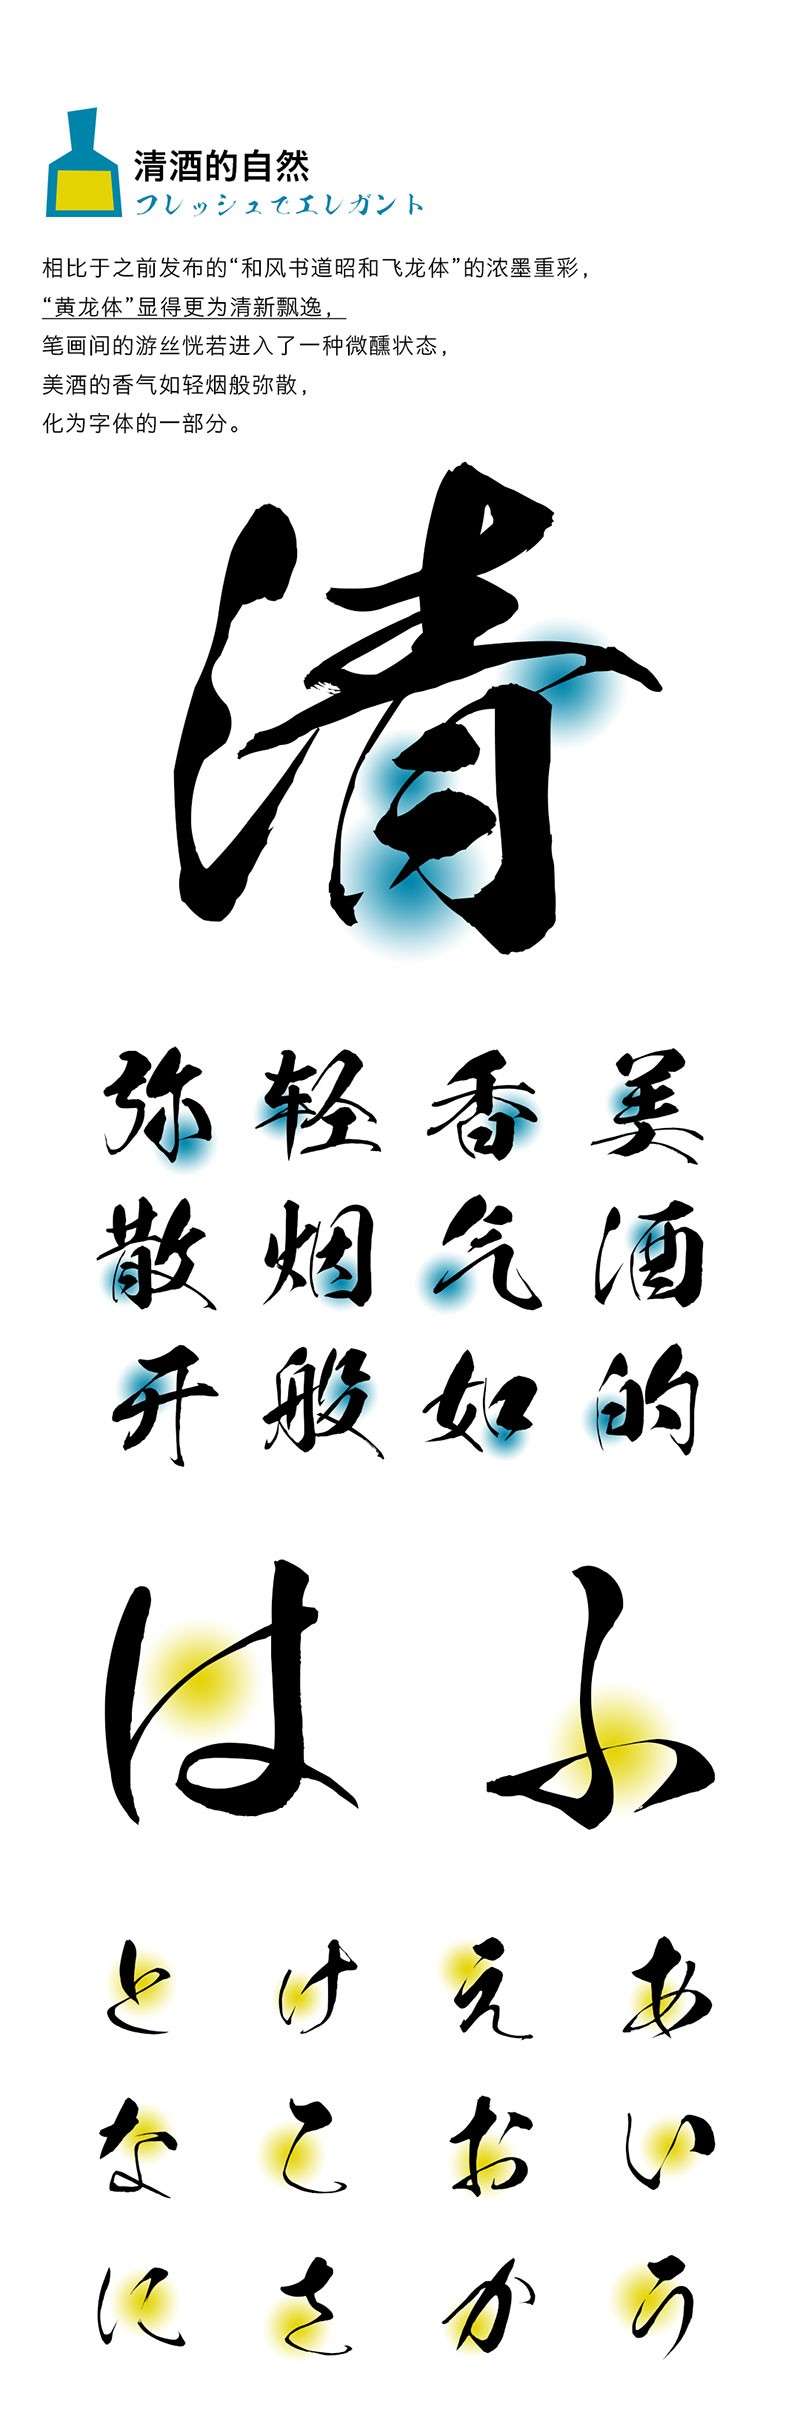 6款日系风格的海报字体 设计素材 第9张